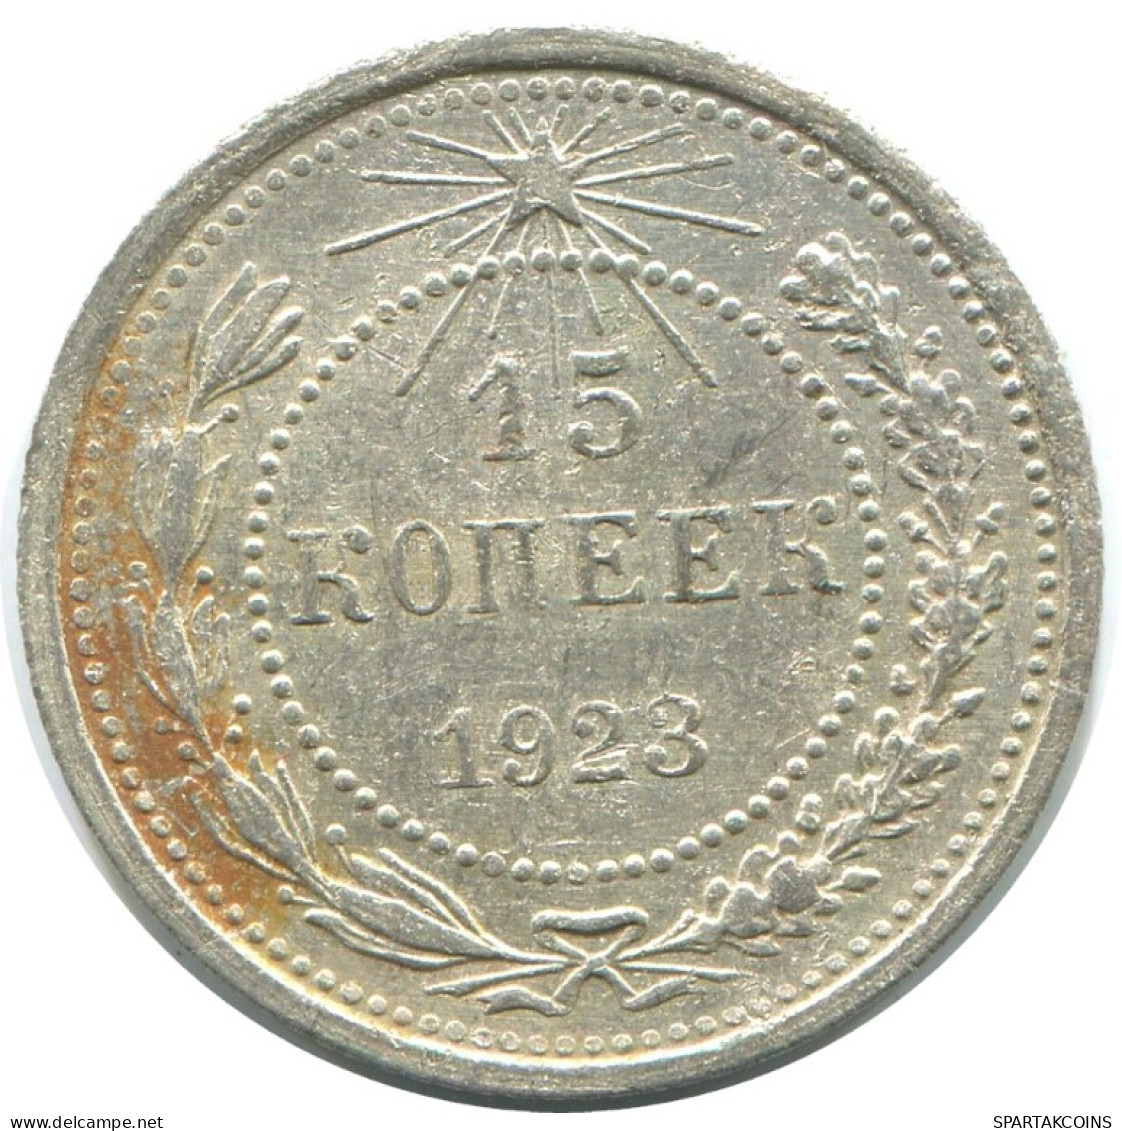 15 KOPEKS 1923 RUSSIA RSFSR SILVER Coin HIGH GRADE #AF129.4.U.A - Rusland